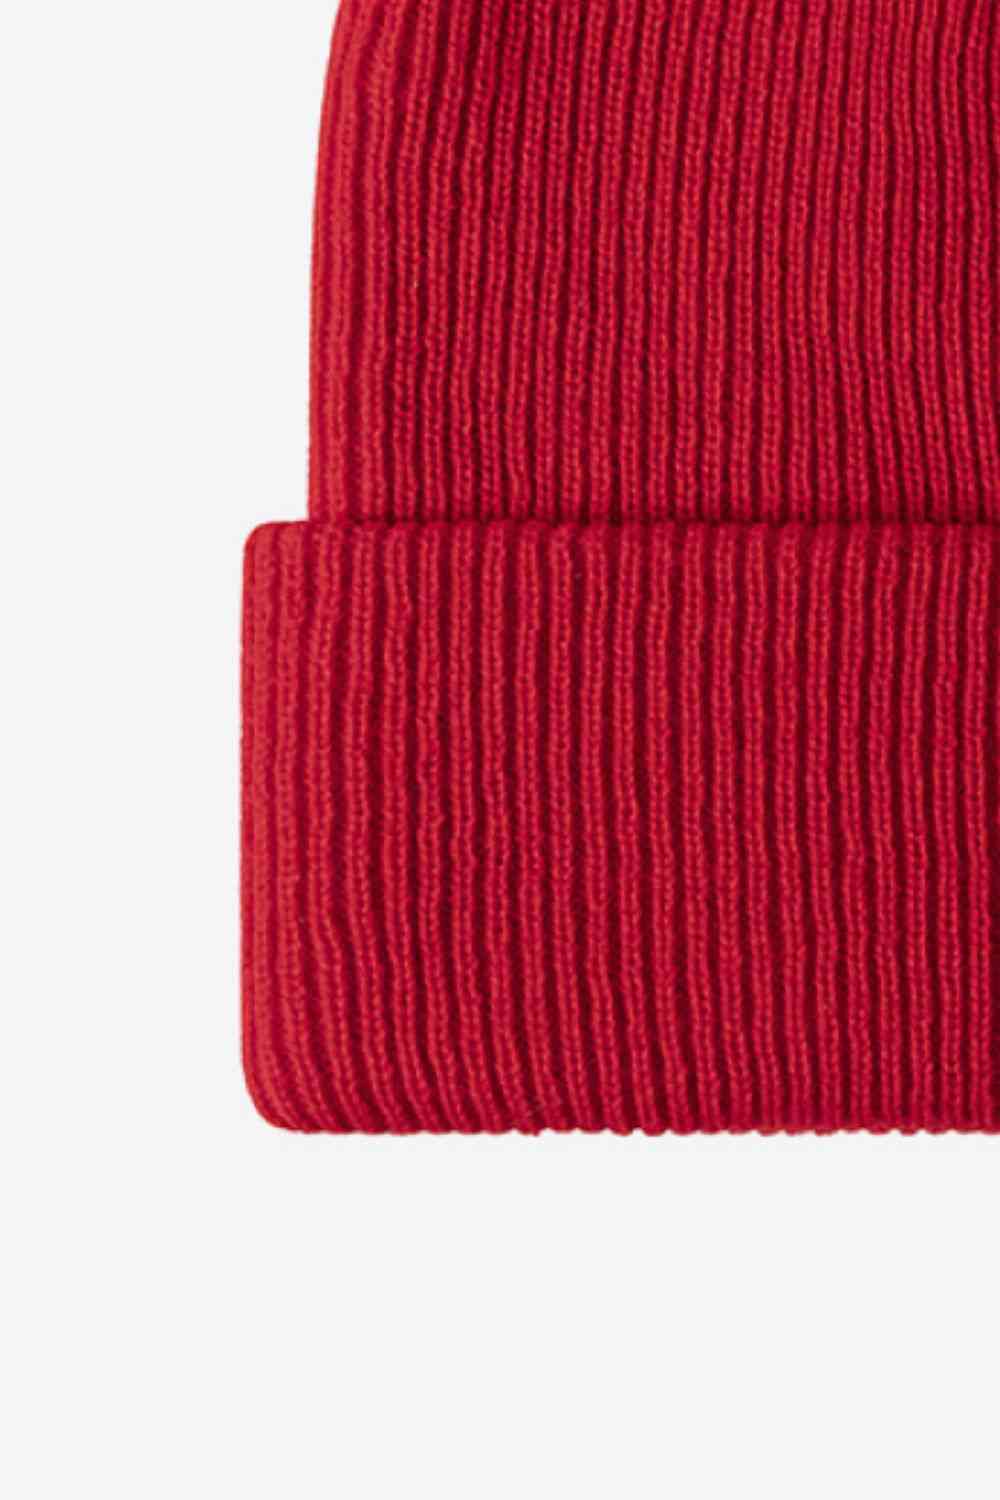 Firebrick Warm Winter Knit Beanie Winter Accessories